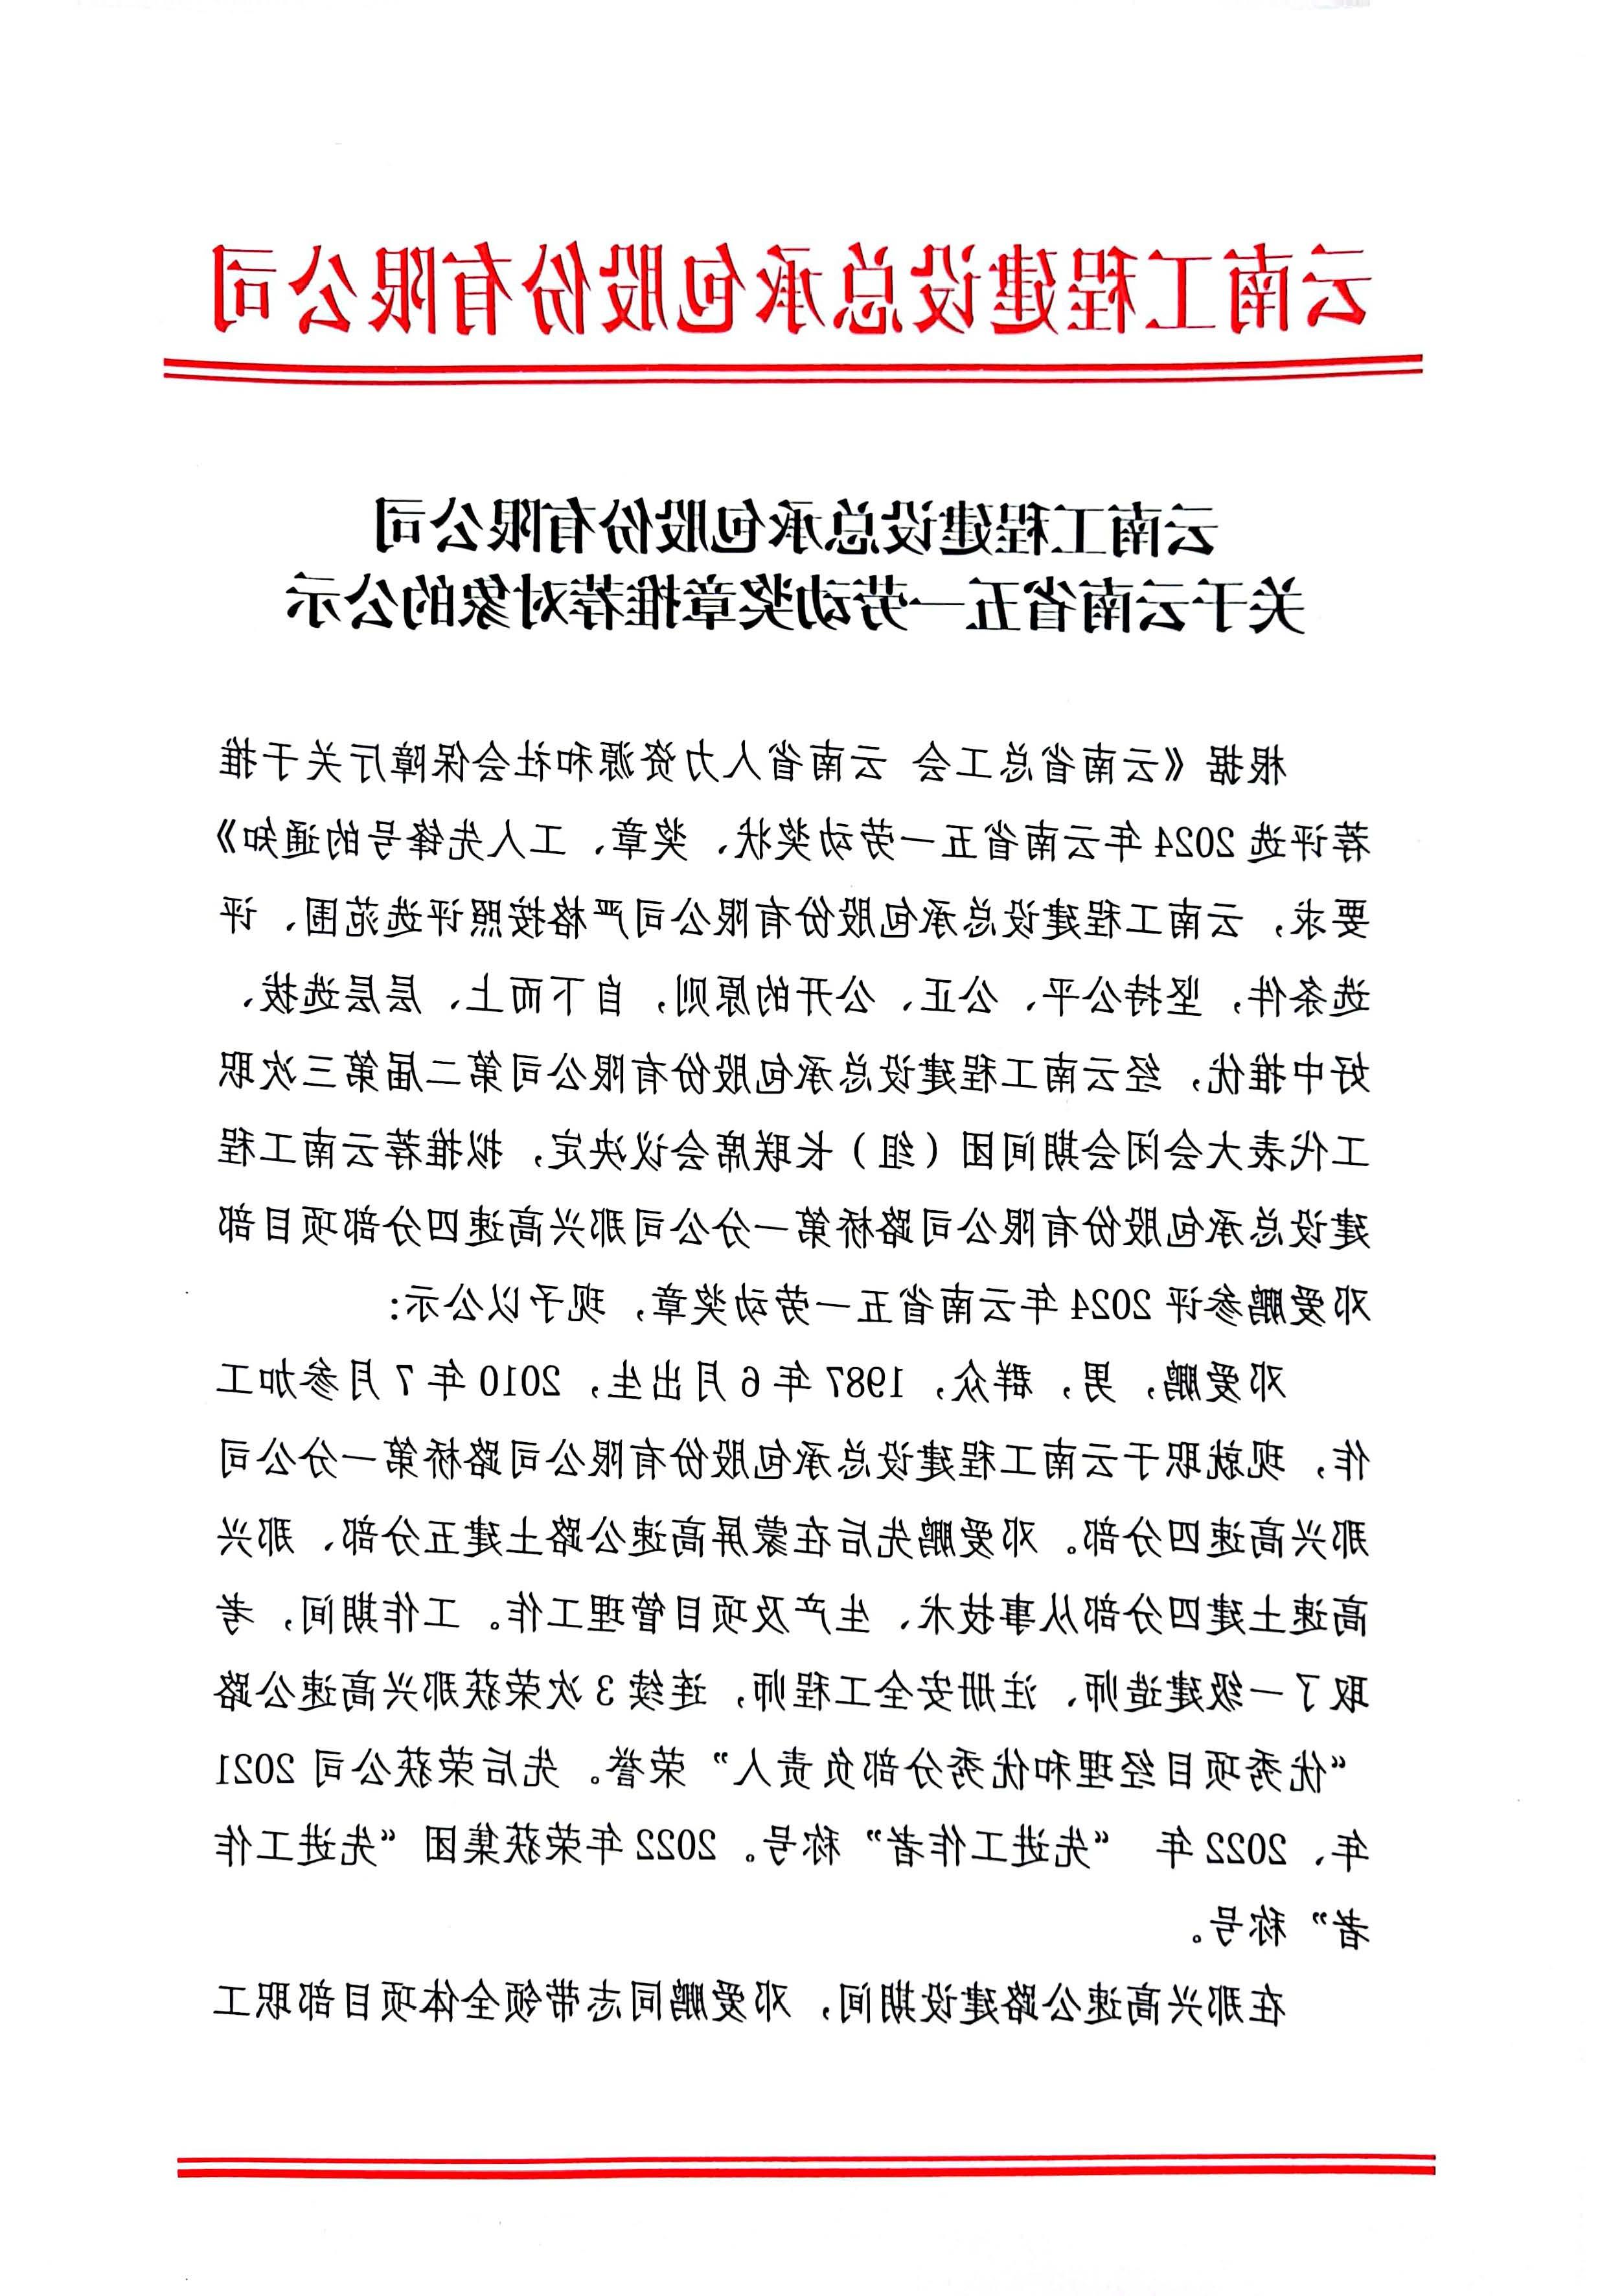 世界杯下注首页关于云南省五一劳动奖章推荐对象的公示 页面_1.jpg